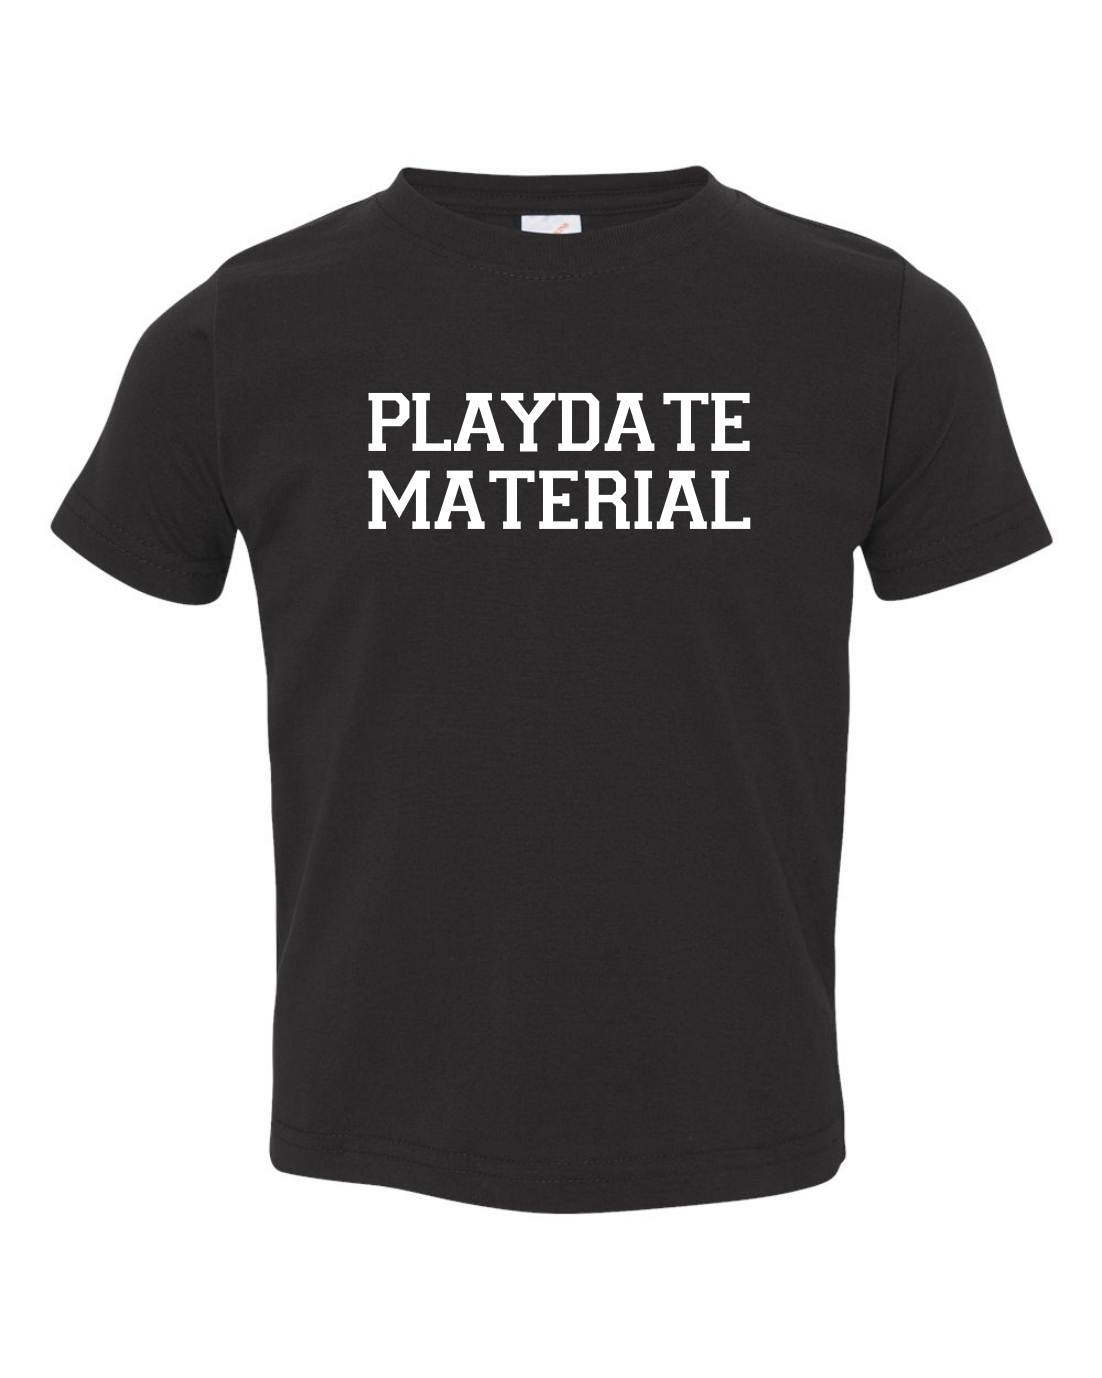 Playdate Material Toddler T-Shirt